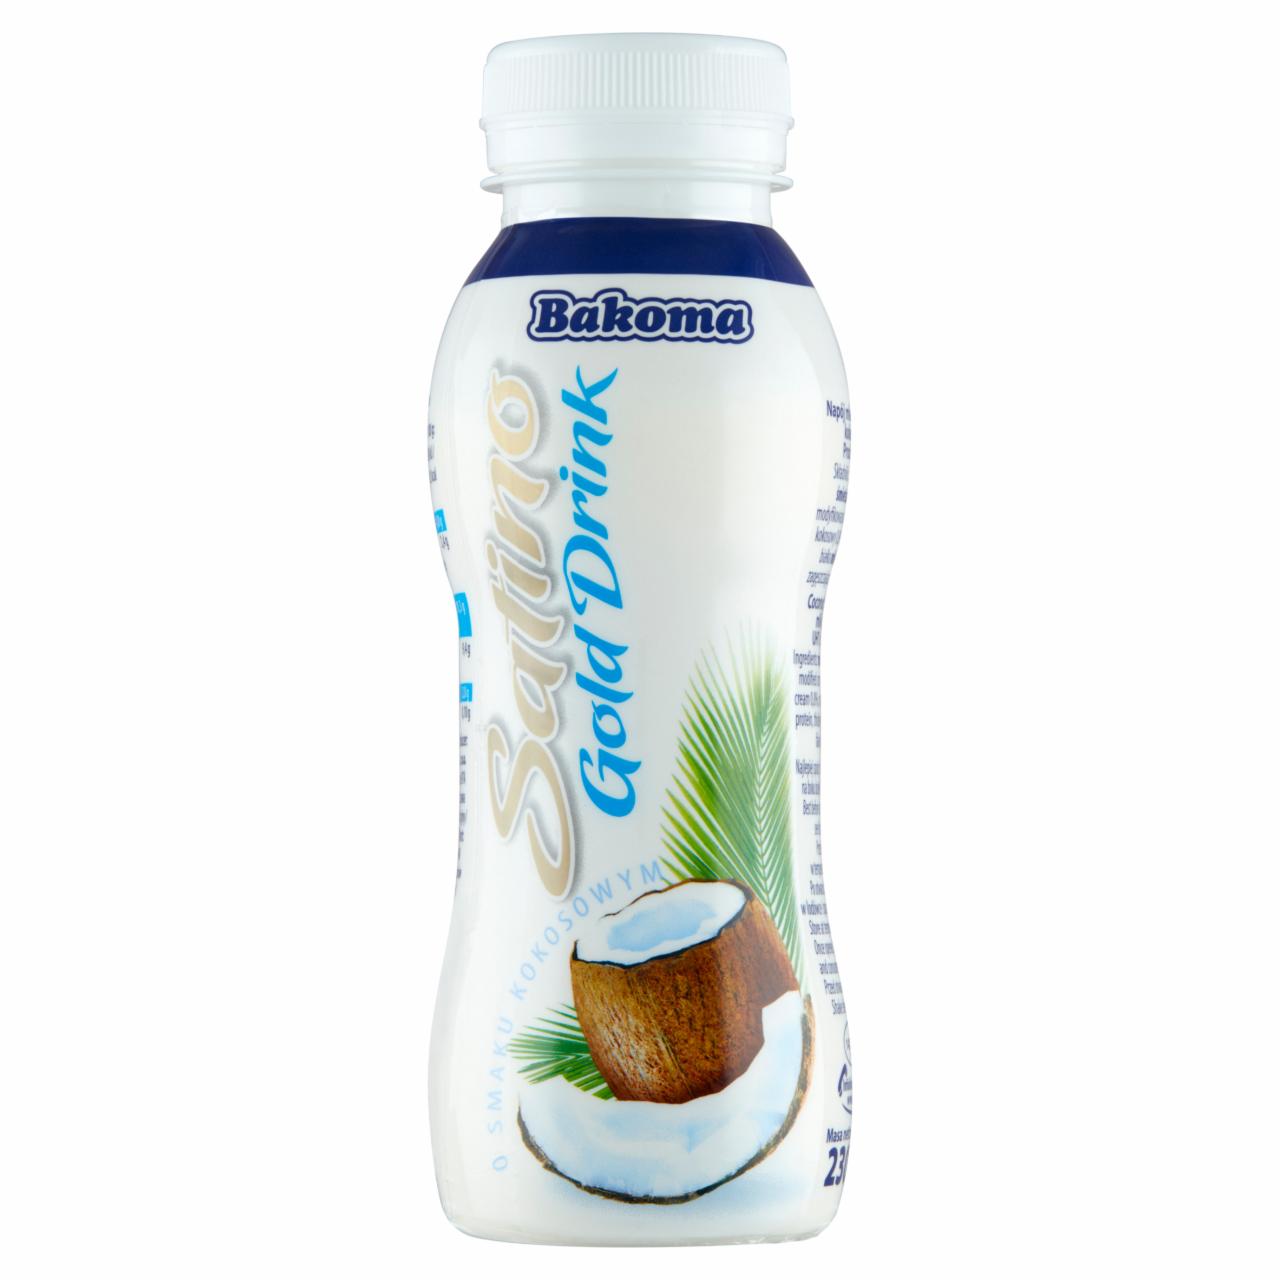 Zdjęcia - Bakoma Satino Gold Drink Napój mleczny smak kokosowy 230 g